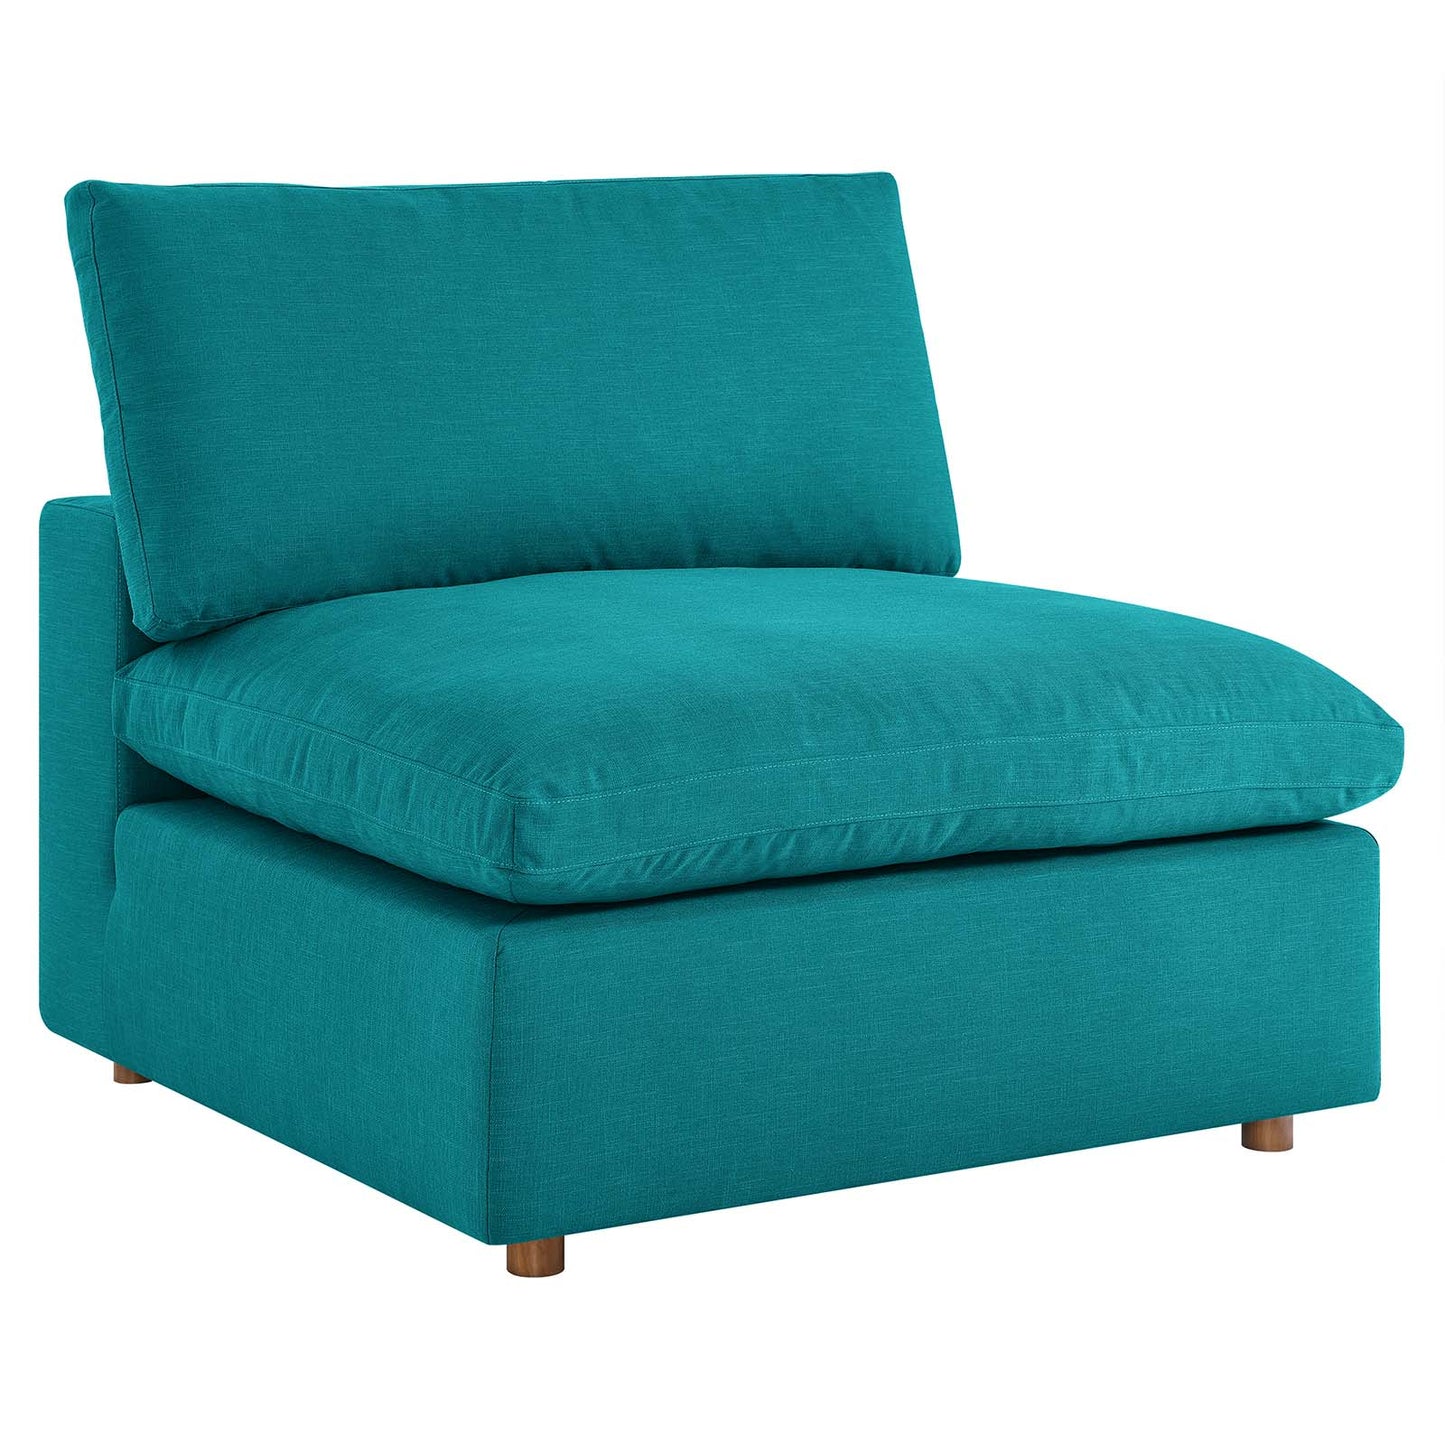 Commix Down Filled Overstuffed 3 Piece Sectional Sofa Set Teal EEI-3355-TEA